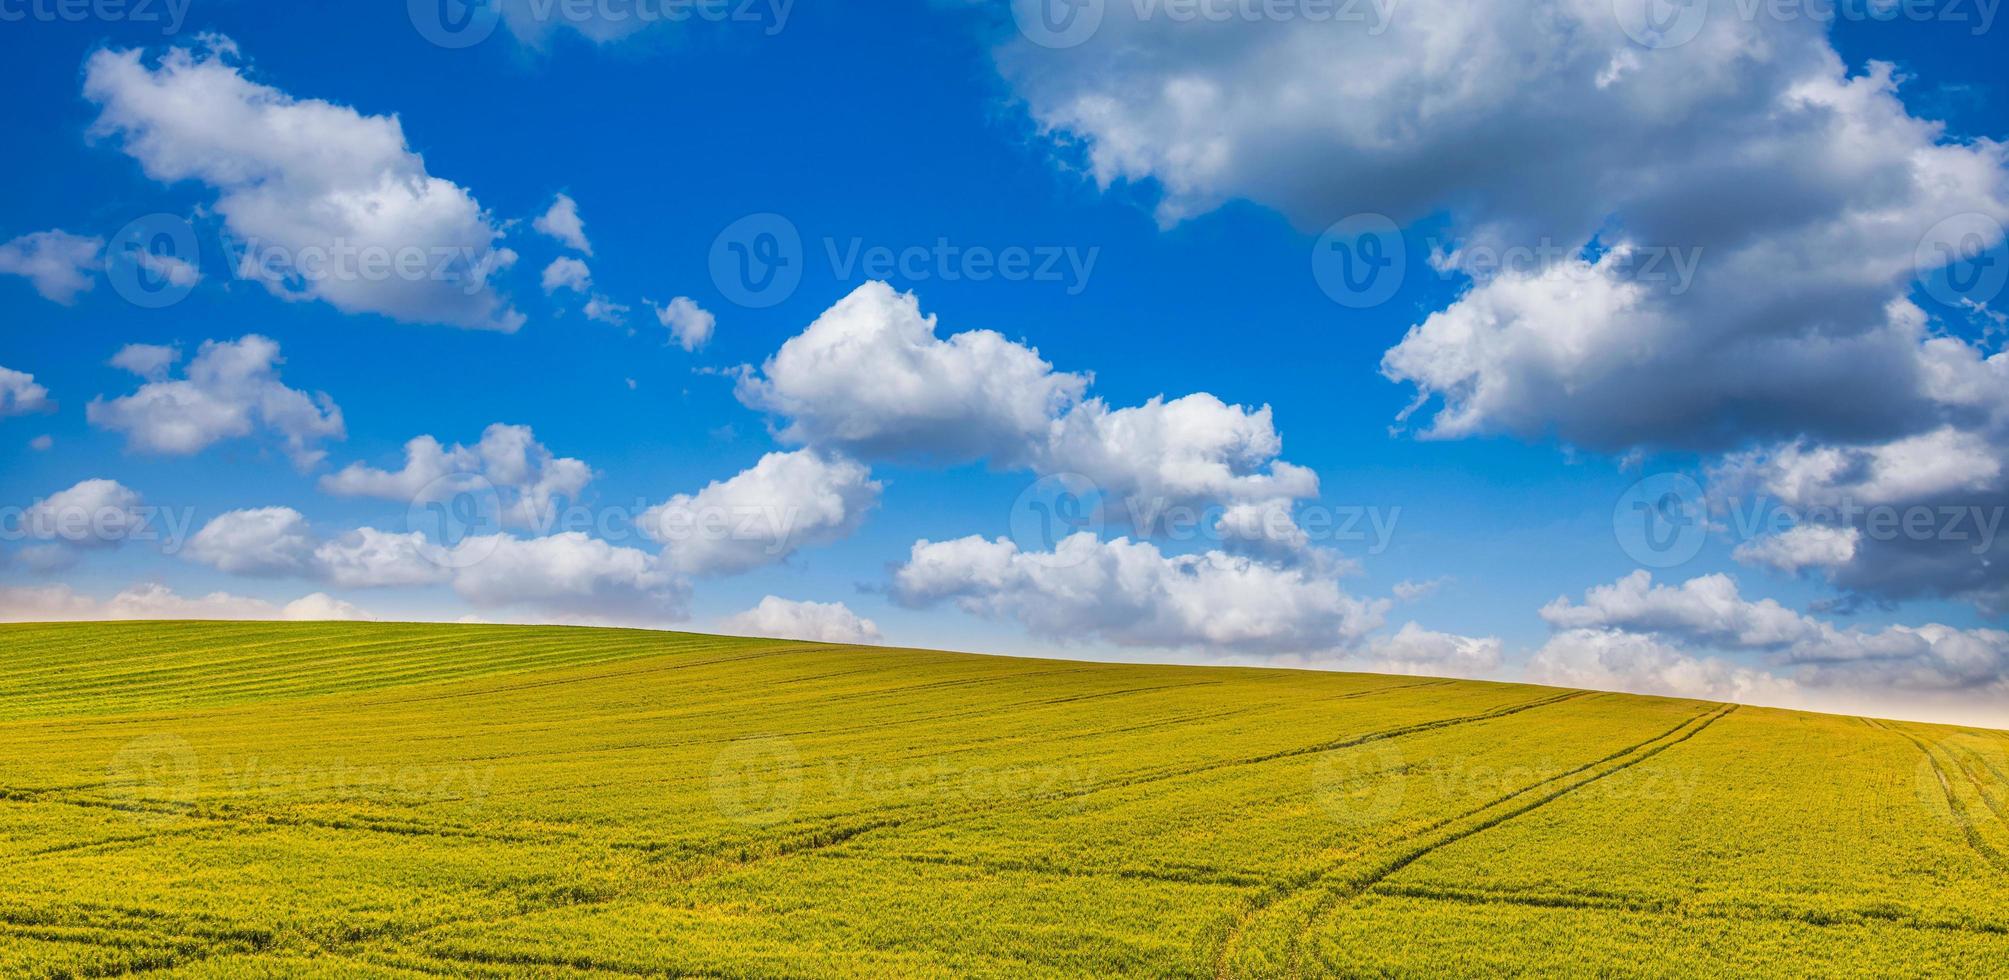 erstaunliche landwirtschaftslandschaft, entspannende naturlandschaft mit linien im weizenfeld unter sonnigem blauem himmel. idyllischer naturhintergrund, panoramischer hintergrund. schöner ruhiger Bauernhof, ländliche Natur foto